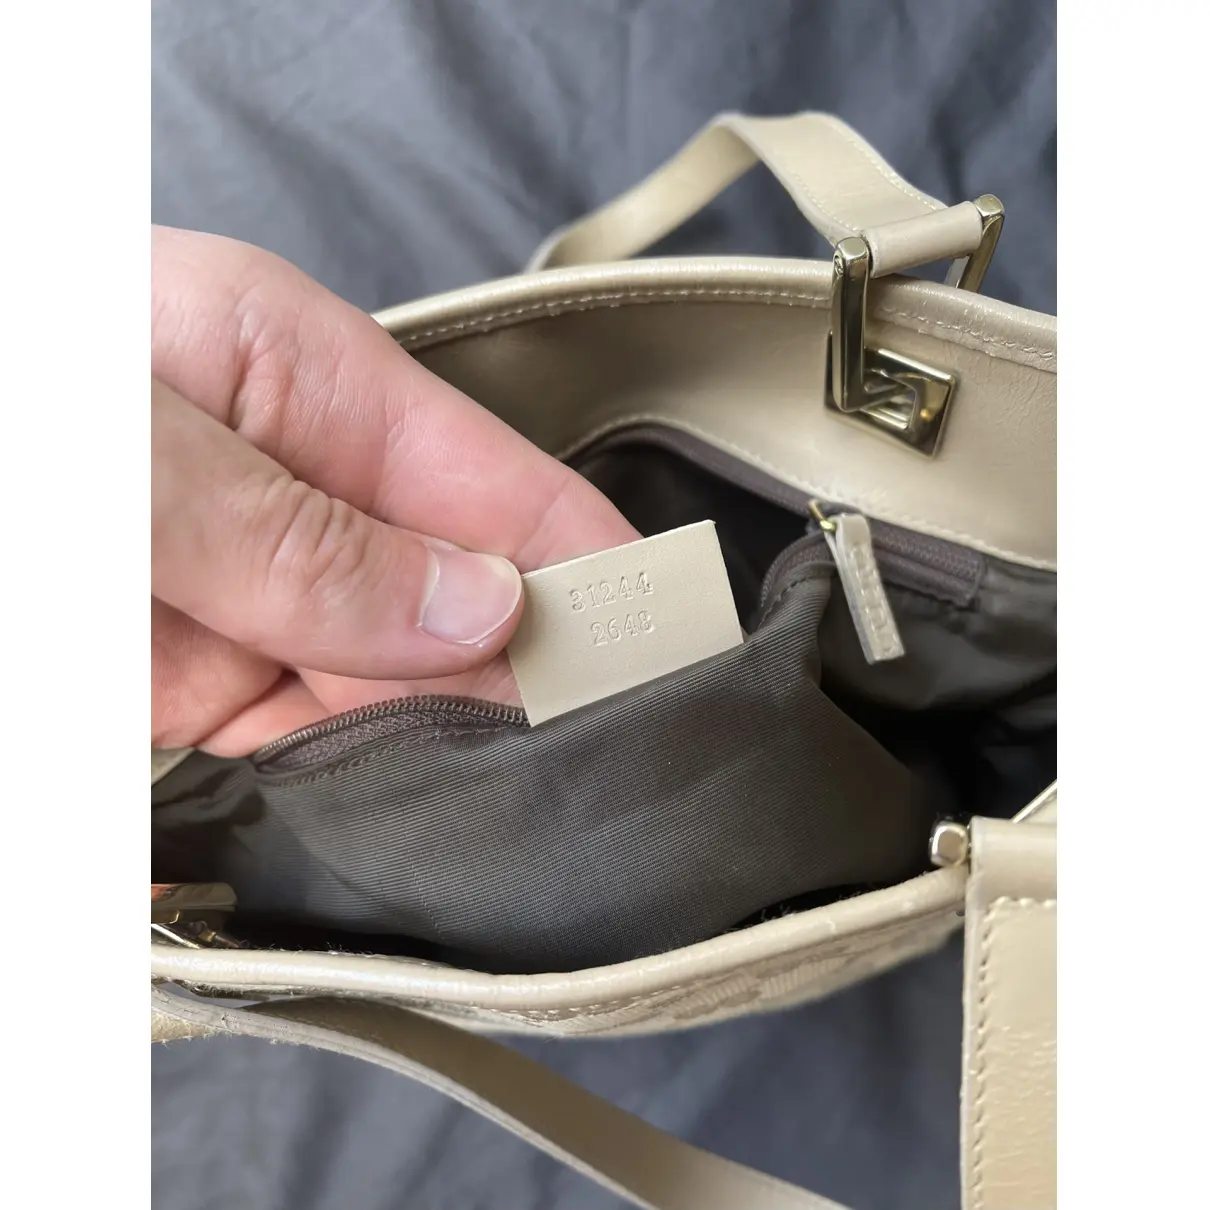 Buy Gucci Eclipse cloth handbag online